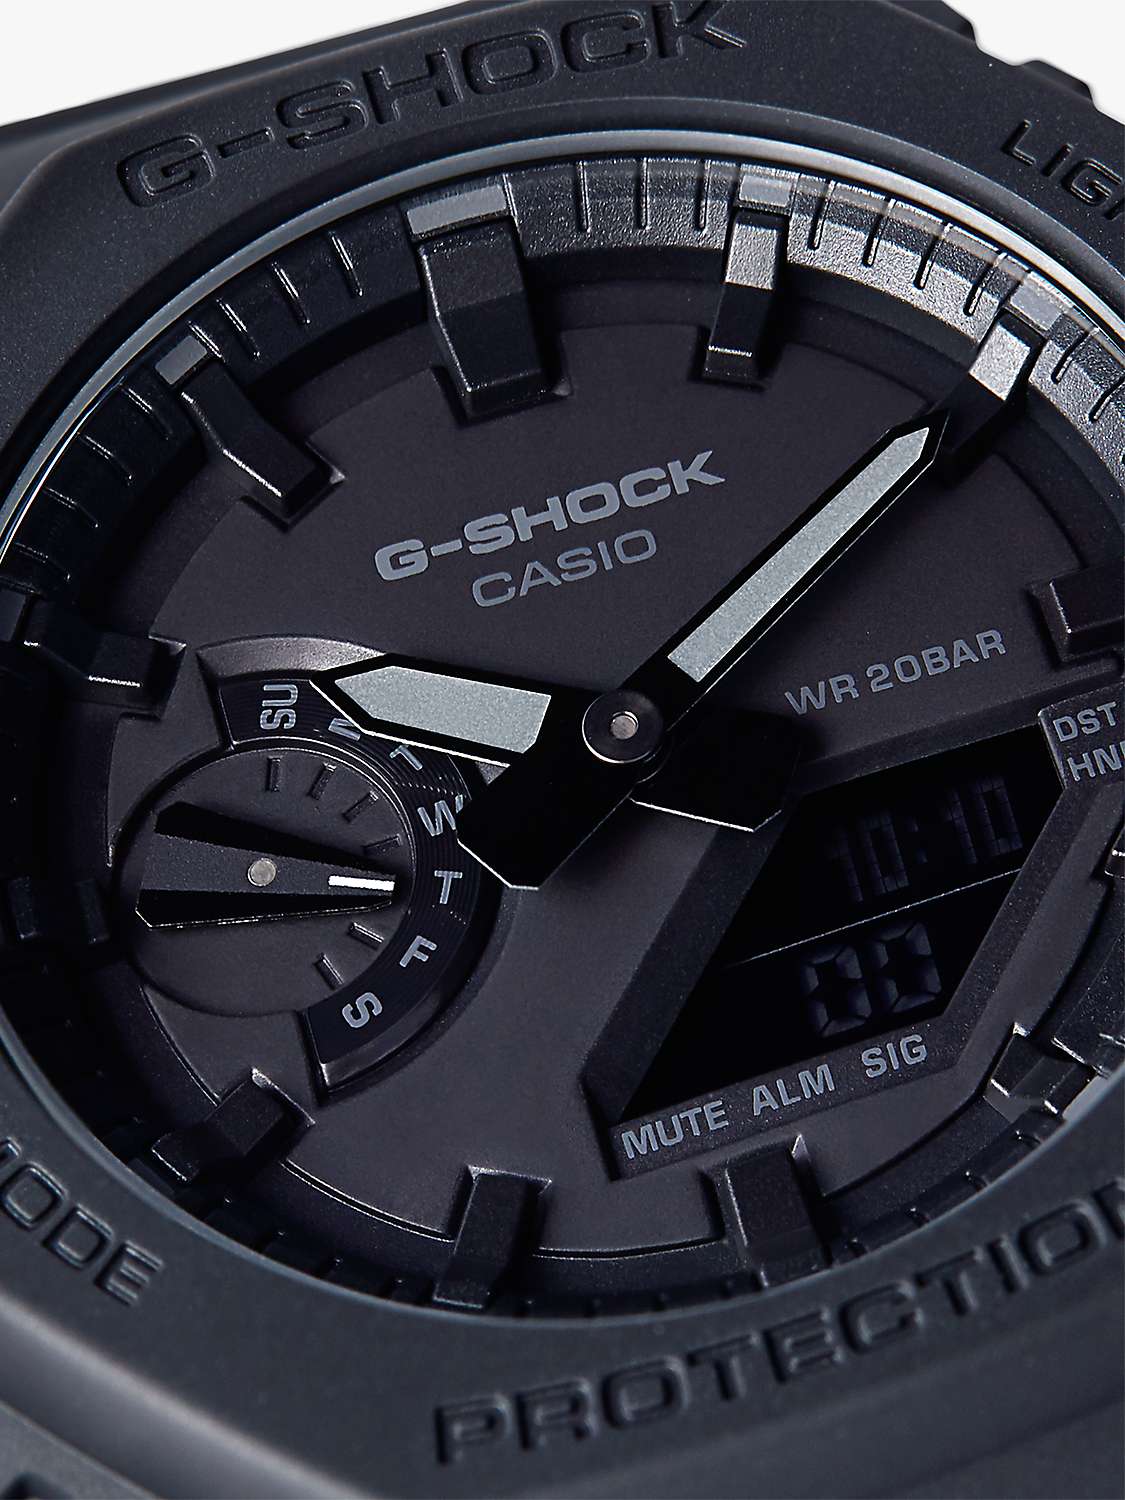 Casio Men's G-Shock Day Resin Strap Watch, Black GA-2100-1A1ER at John